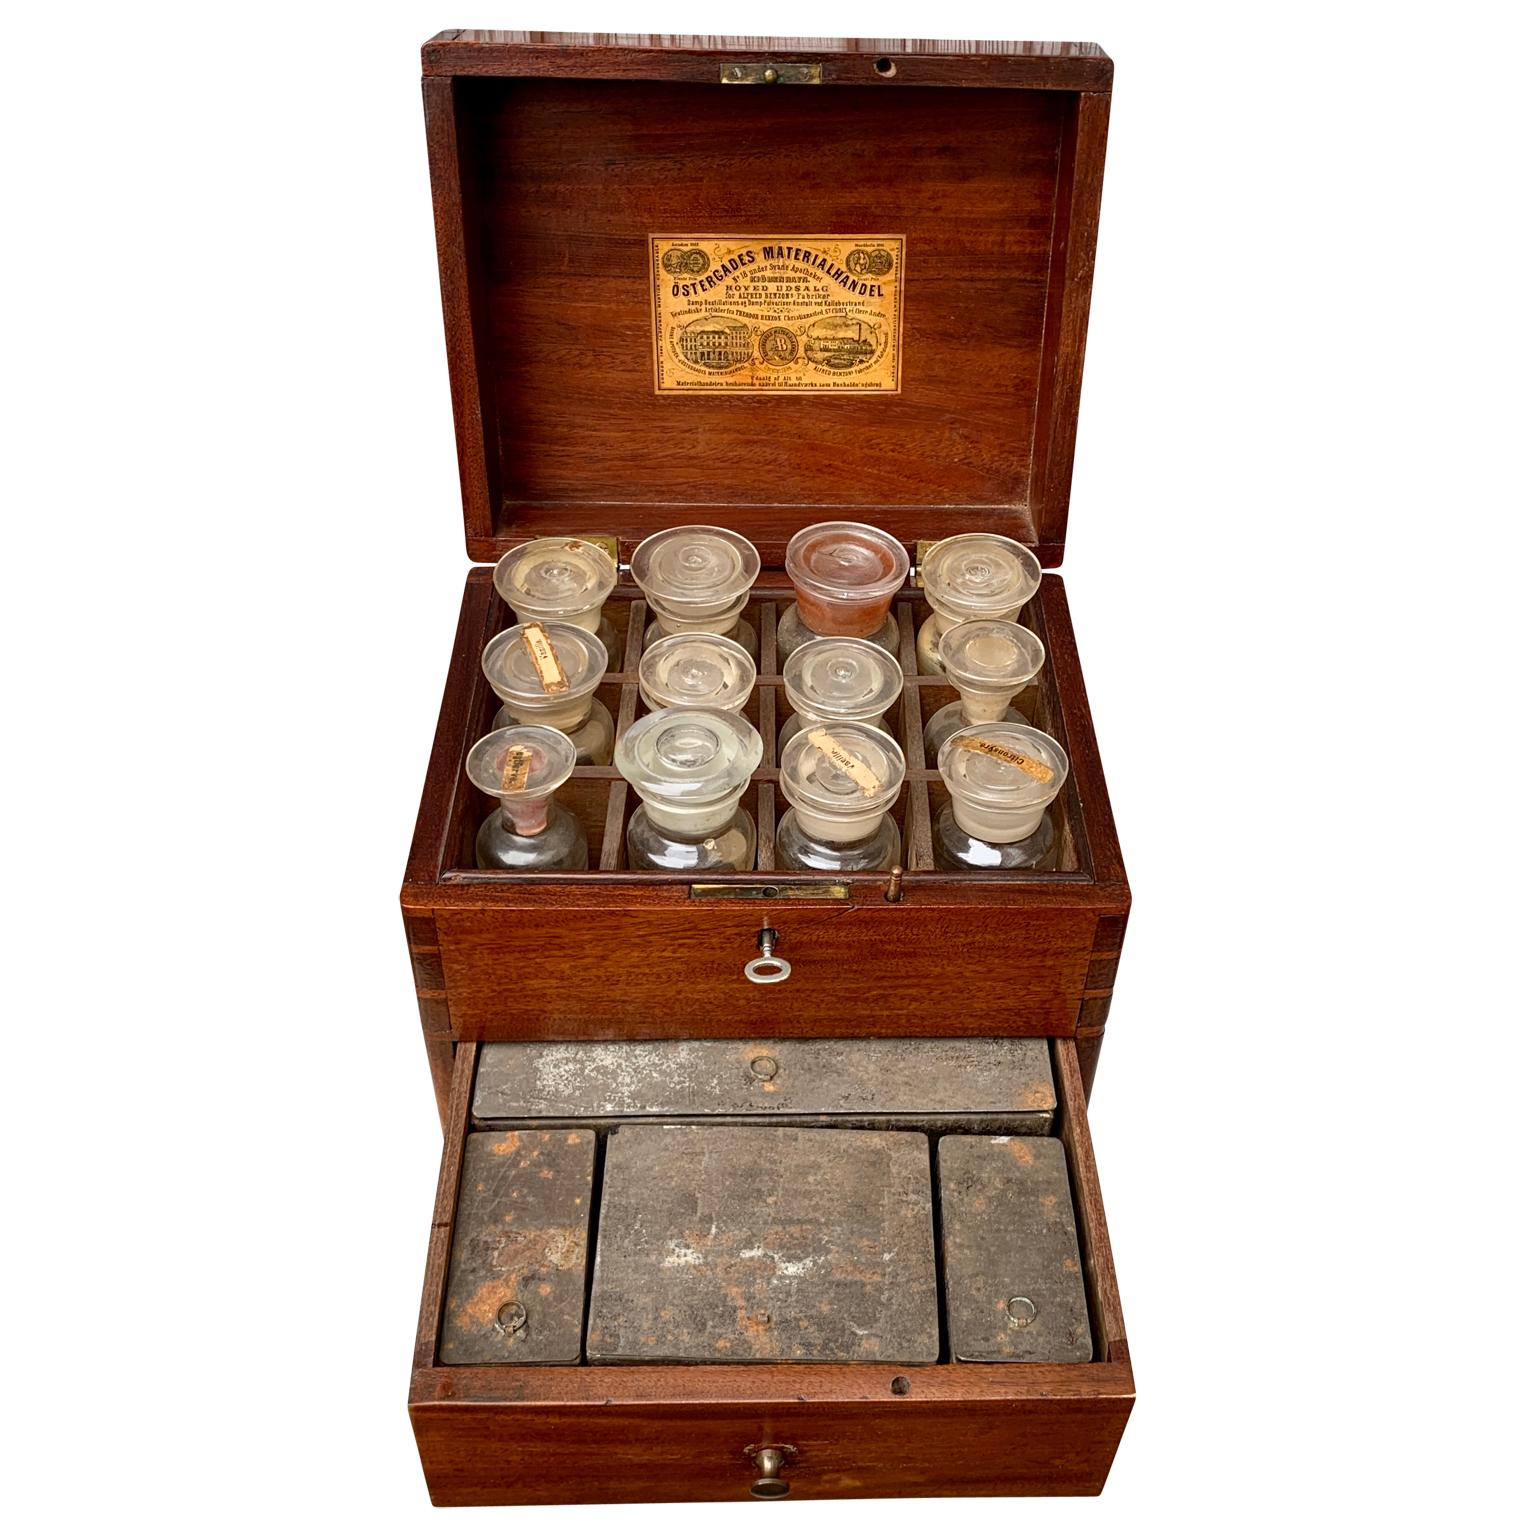 Rare boîte à épices rectangulaire du milieu du XIXe siècle, en acajou, avec poignées en laiton d'origine, provenant de Copenhague au Danemark. Cette boîte à épices de 